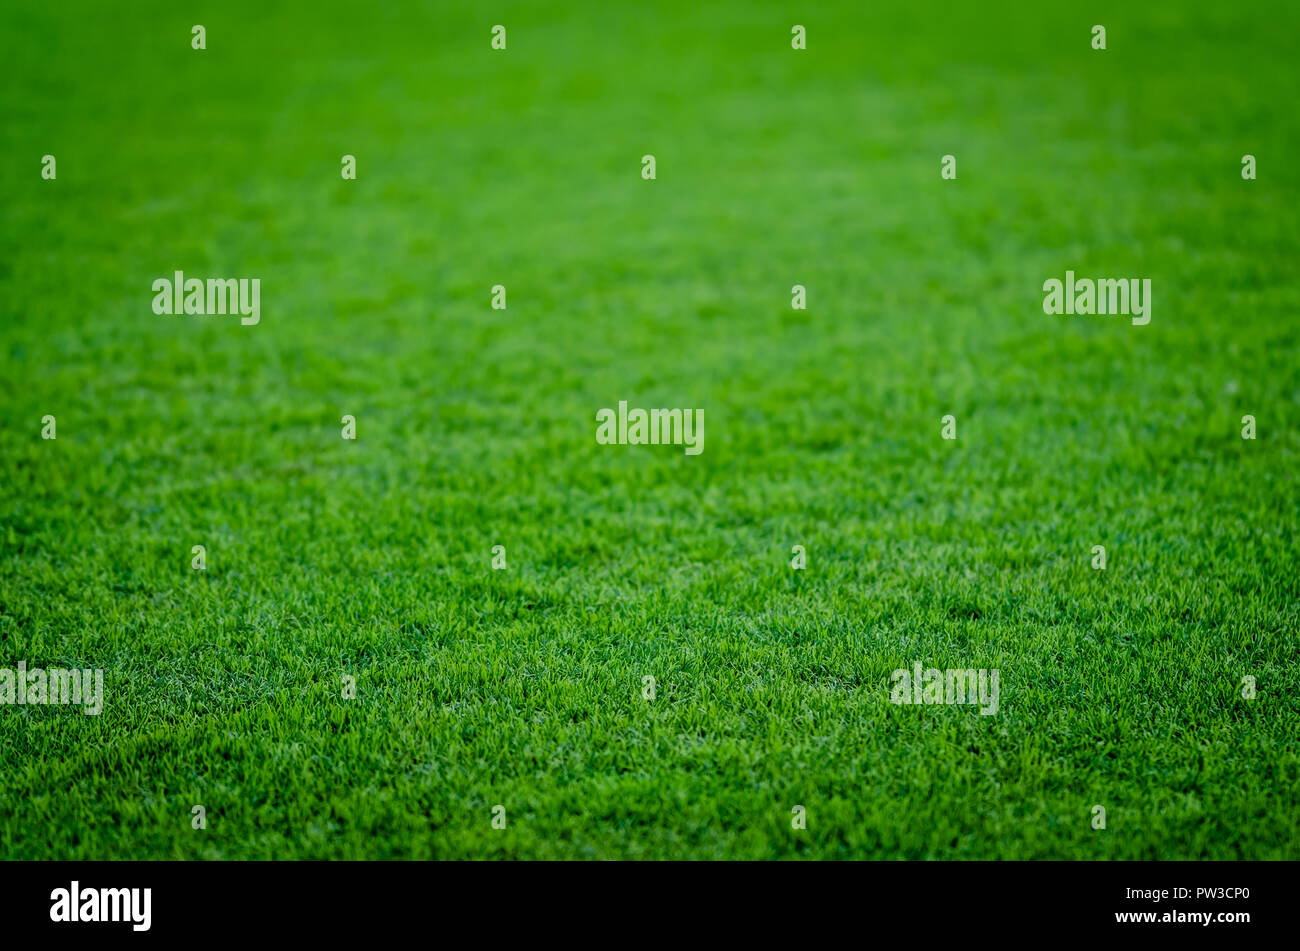 Zusammenfassung Hintergrund des grünen Grases auf einem Fußballfeld. Ideal für das Platzieren von Objekten mit Tiefenschärfe. Stockfoto